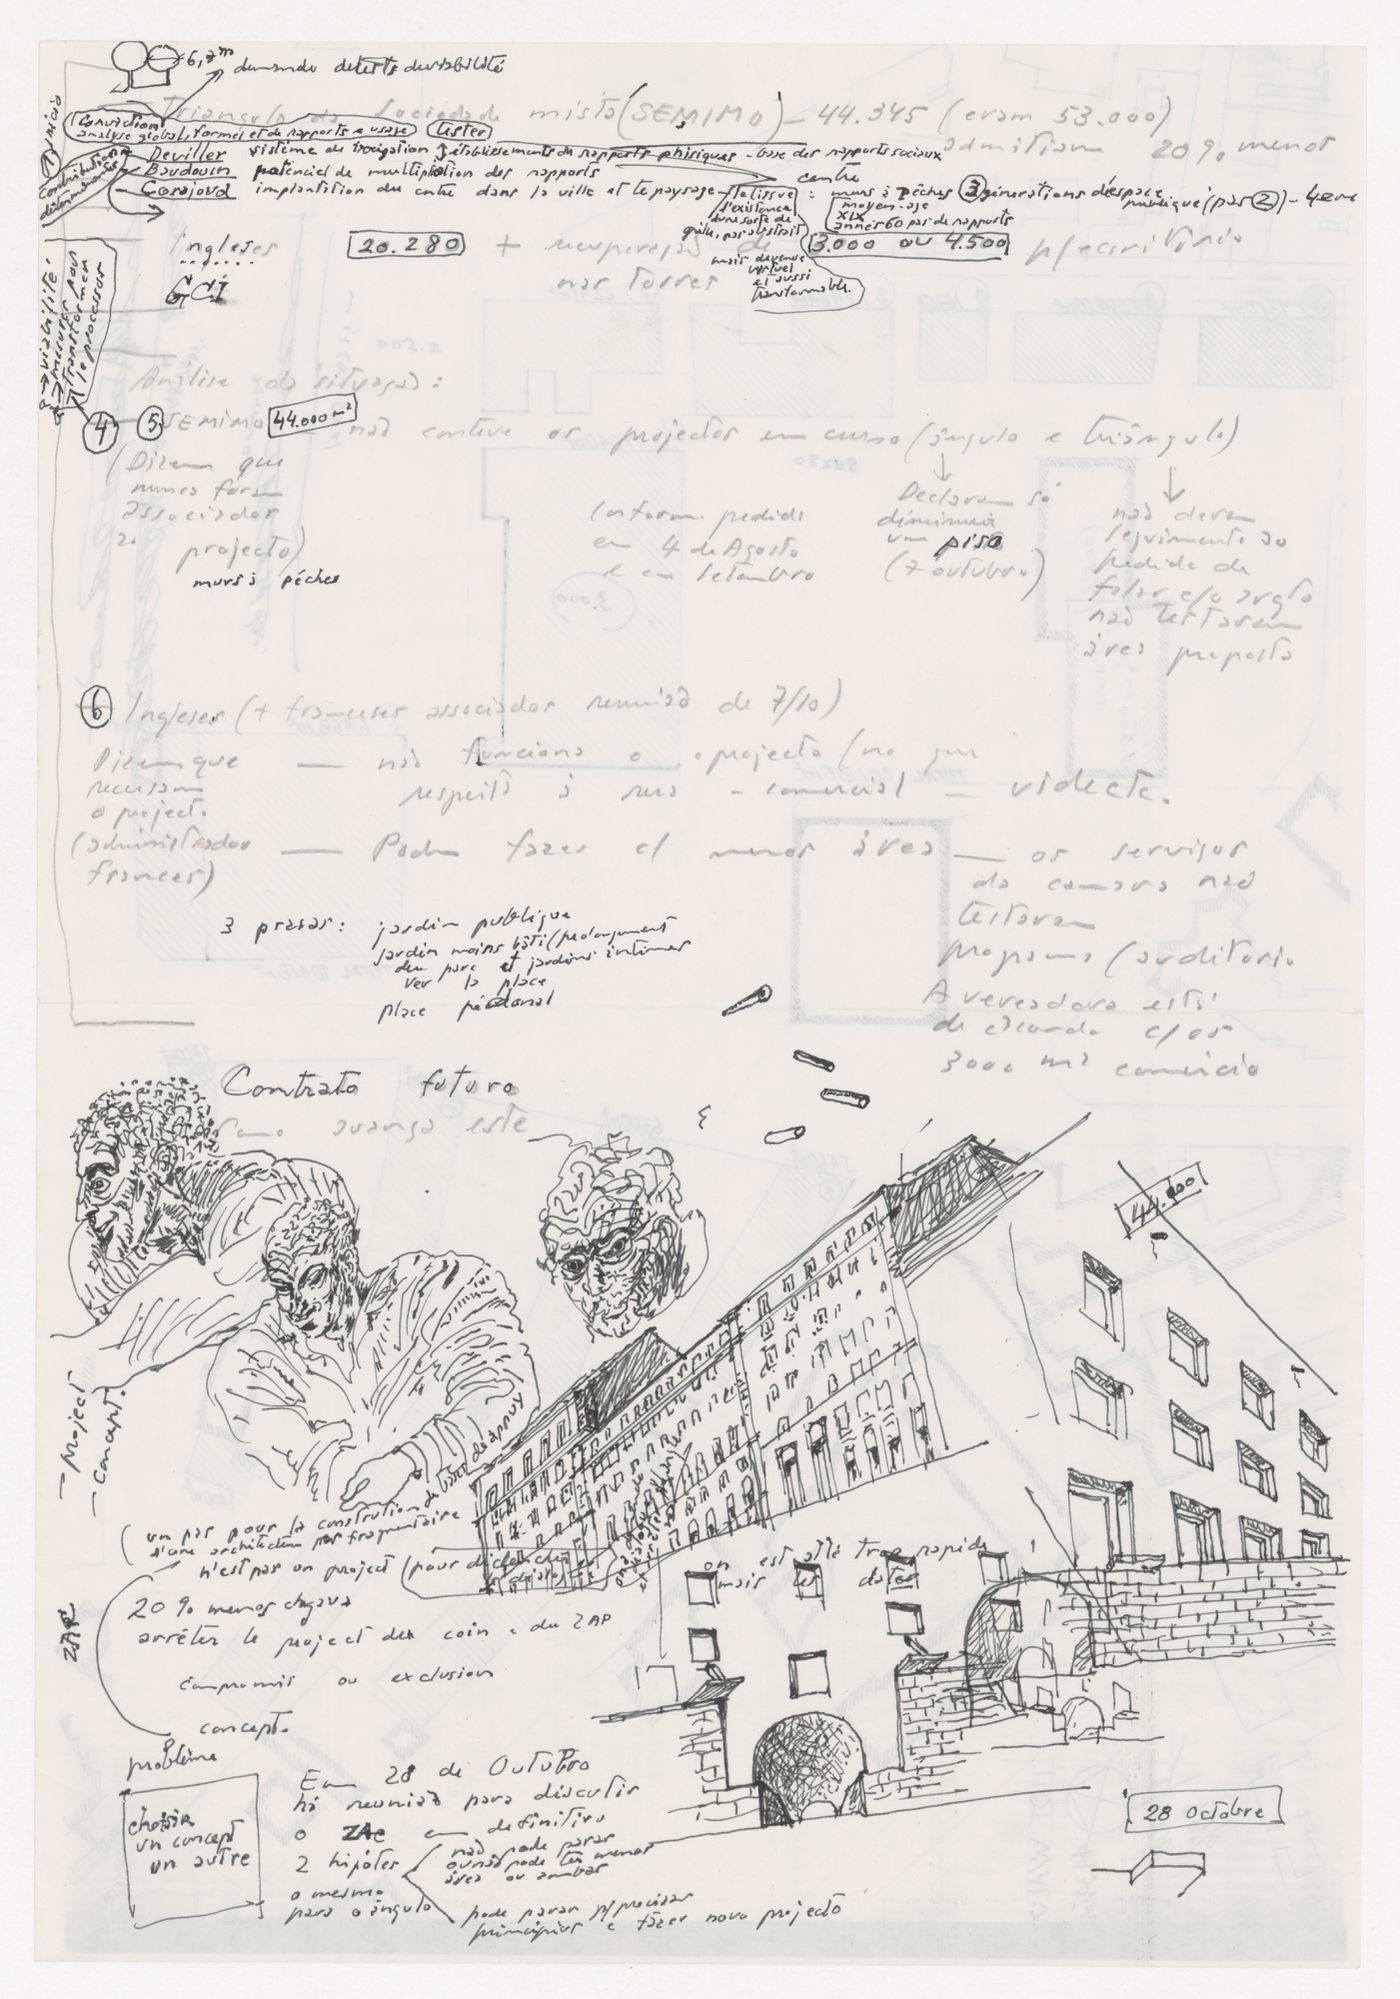 Sketch for Reconstrução do Chiado [Reconstruction of the Chiado area], Lisbon, with notes related to Coeur de Ville, Montreuil, France; verso: Site plan for Coeur de Ville, Montreuil, France